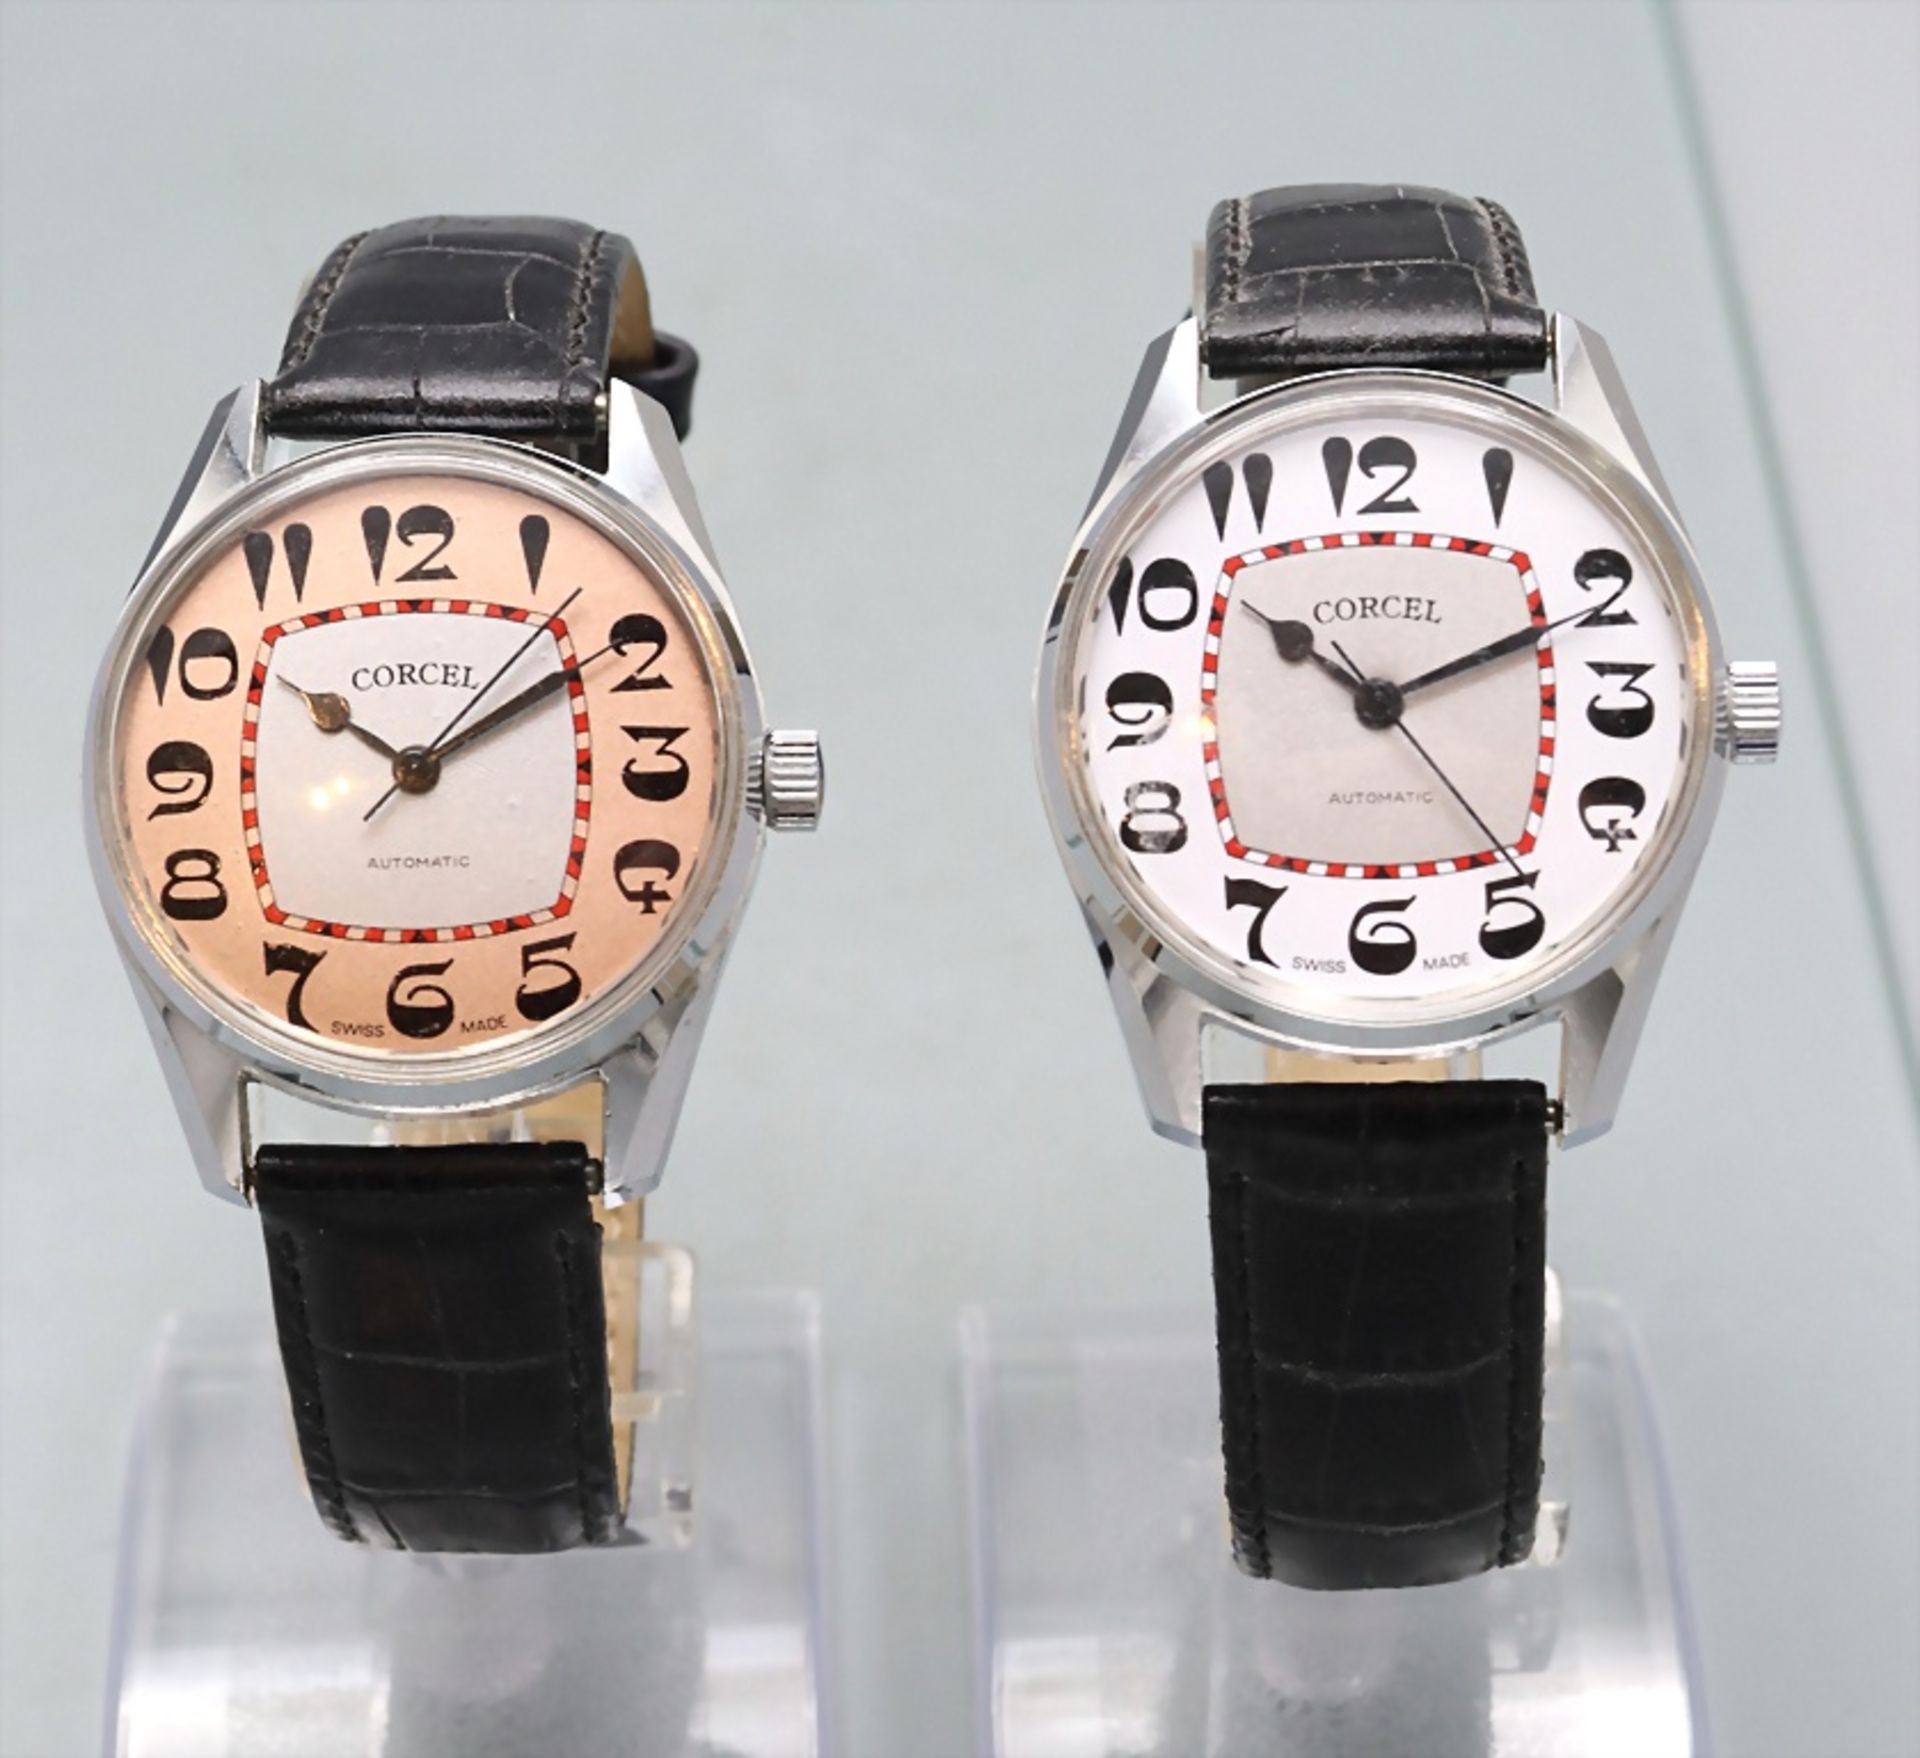 Zwei Herrenarmbanduhren / Two men's wristwatches, Corcel